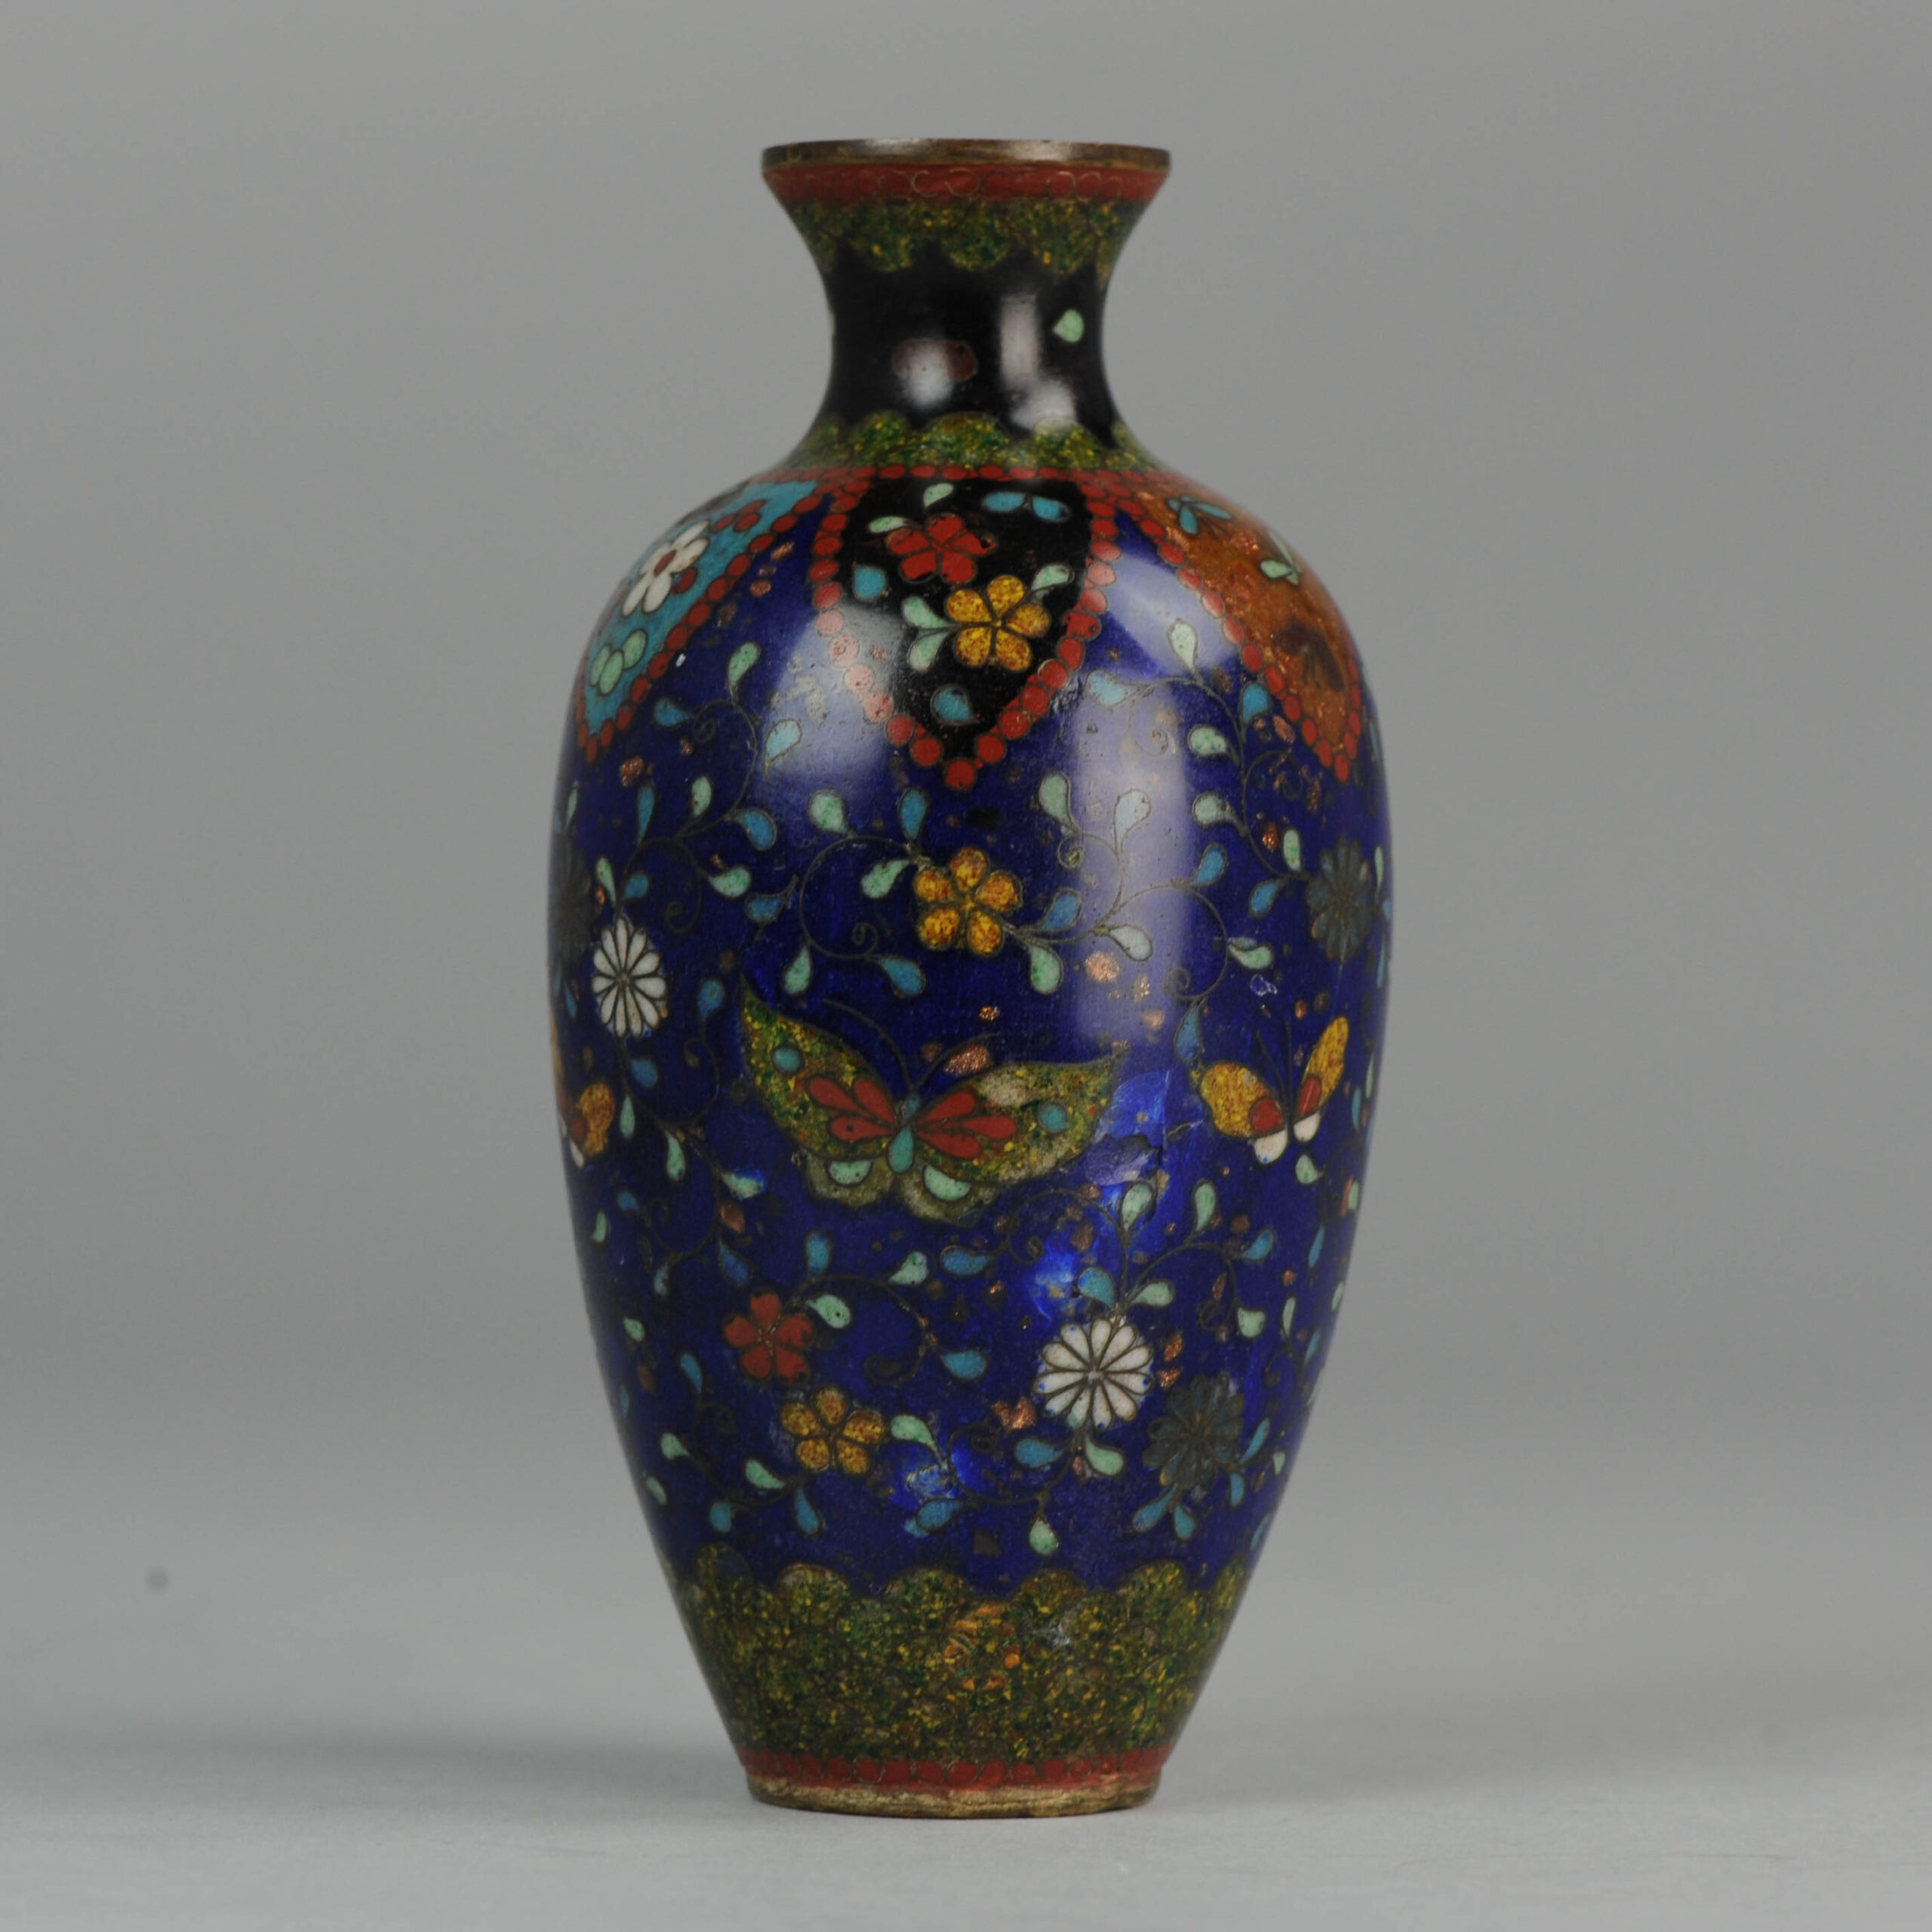 Antique Japanese Bronze Cloisonné 19th c Vase Nice colors Butterflies